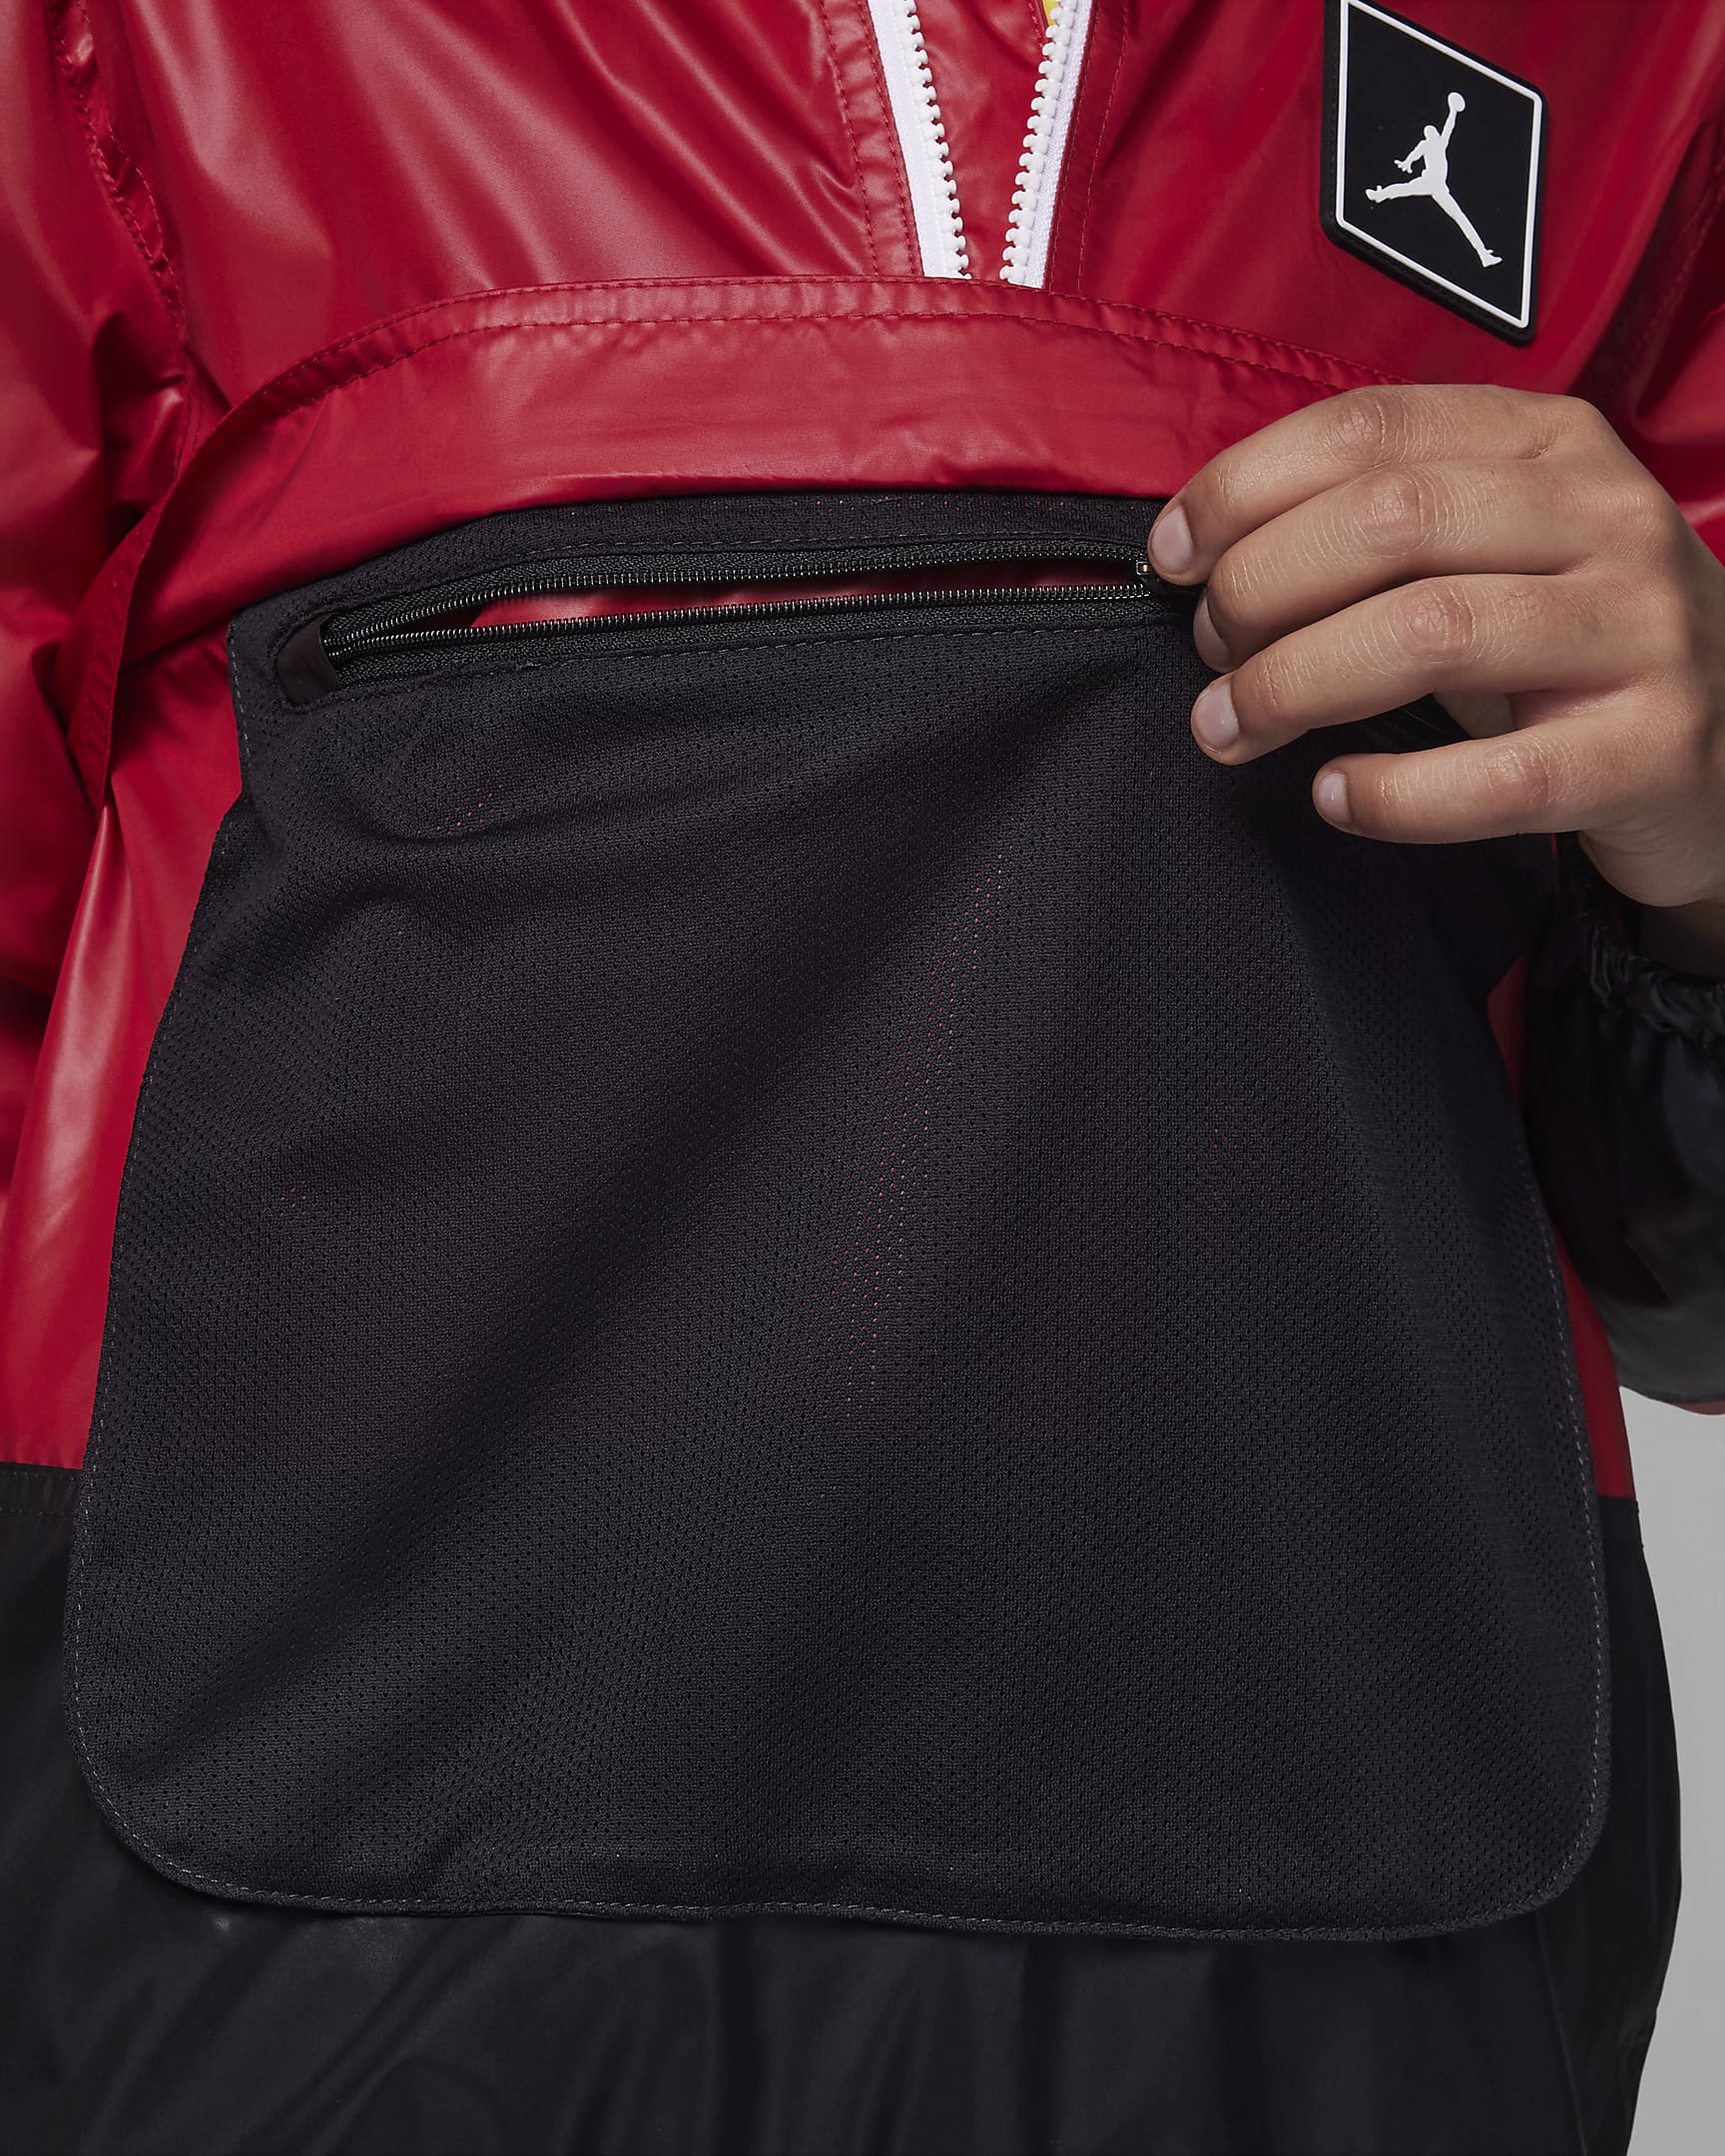 Jordan Half-Zip Windbreaker Older Kids' Jacket. Nike LU